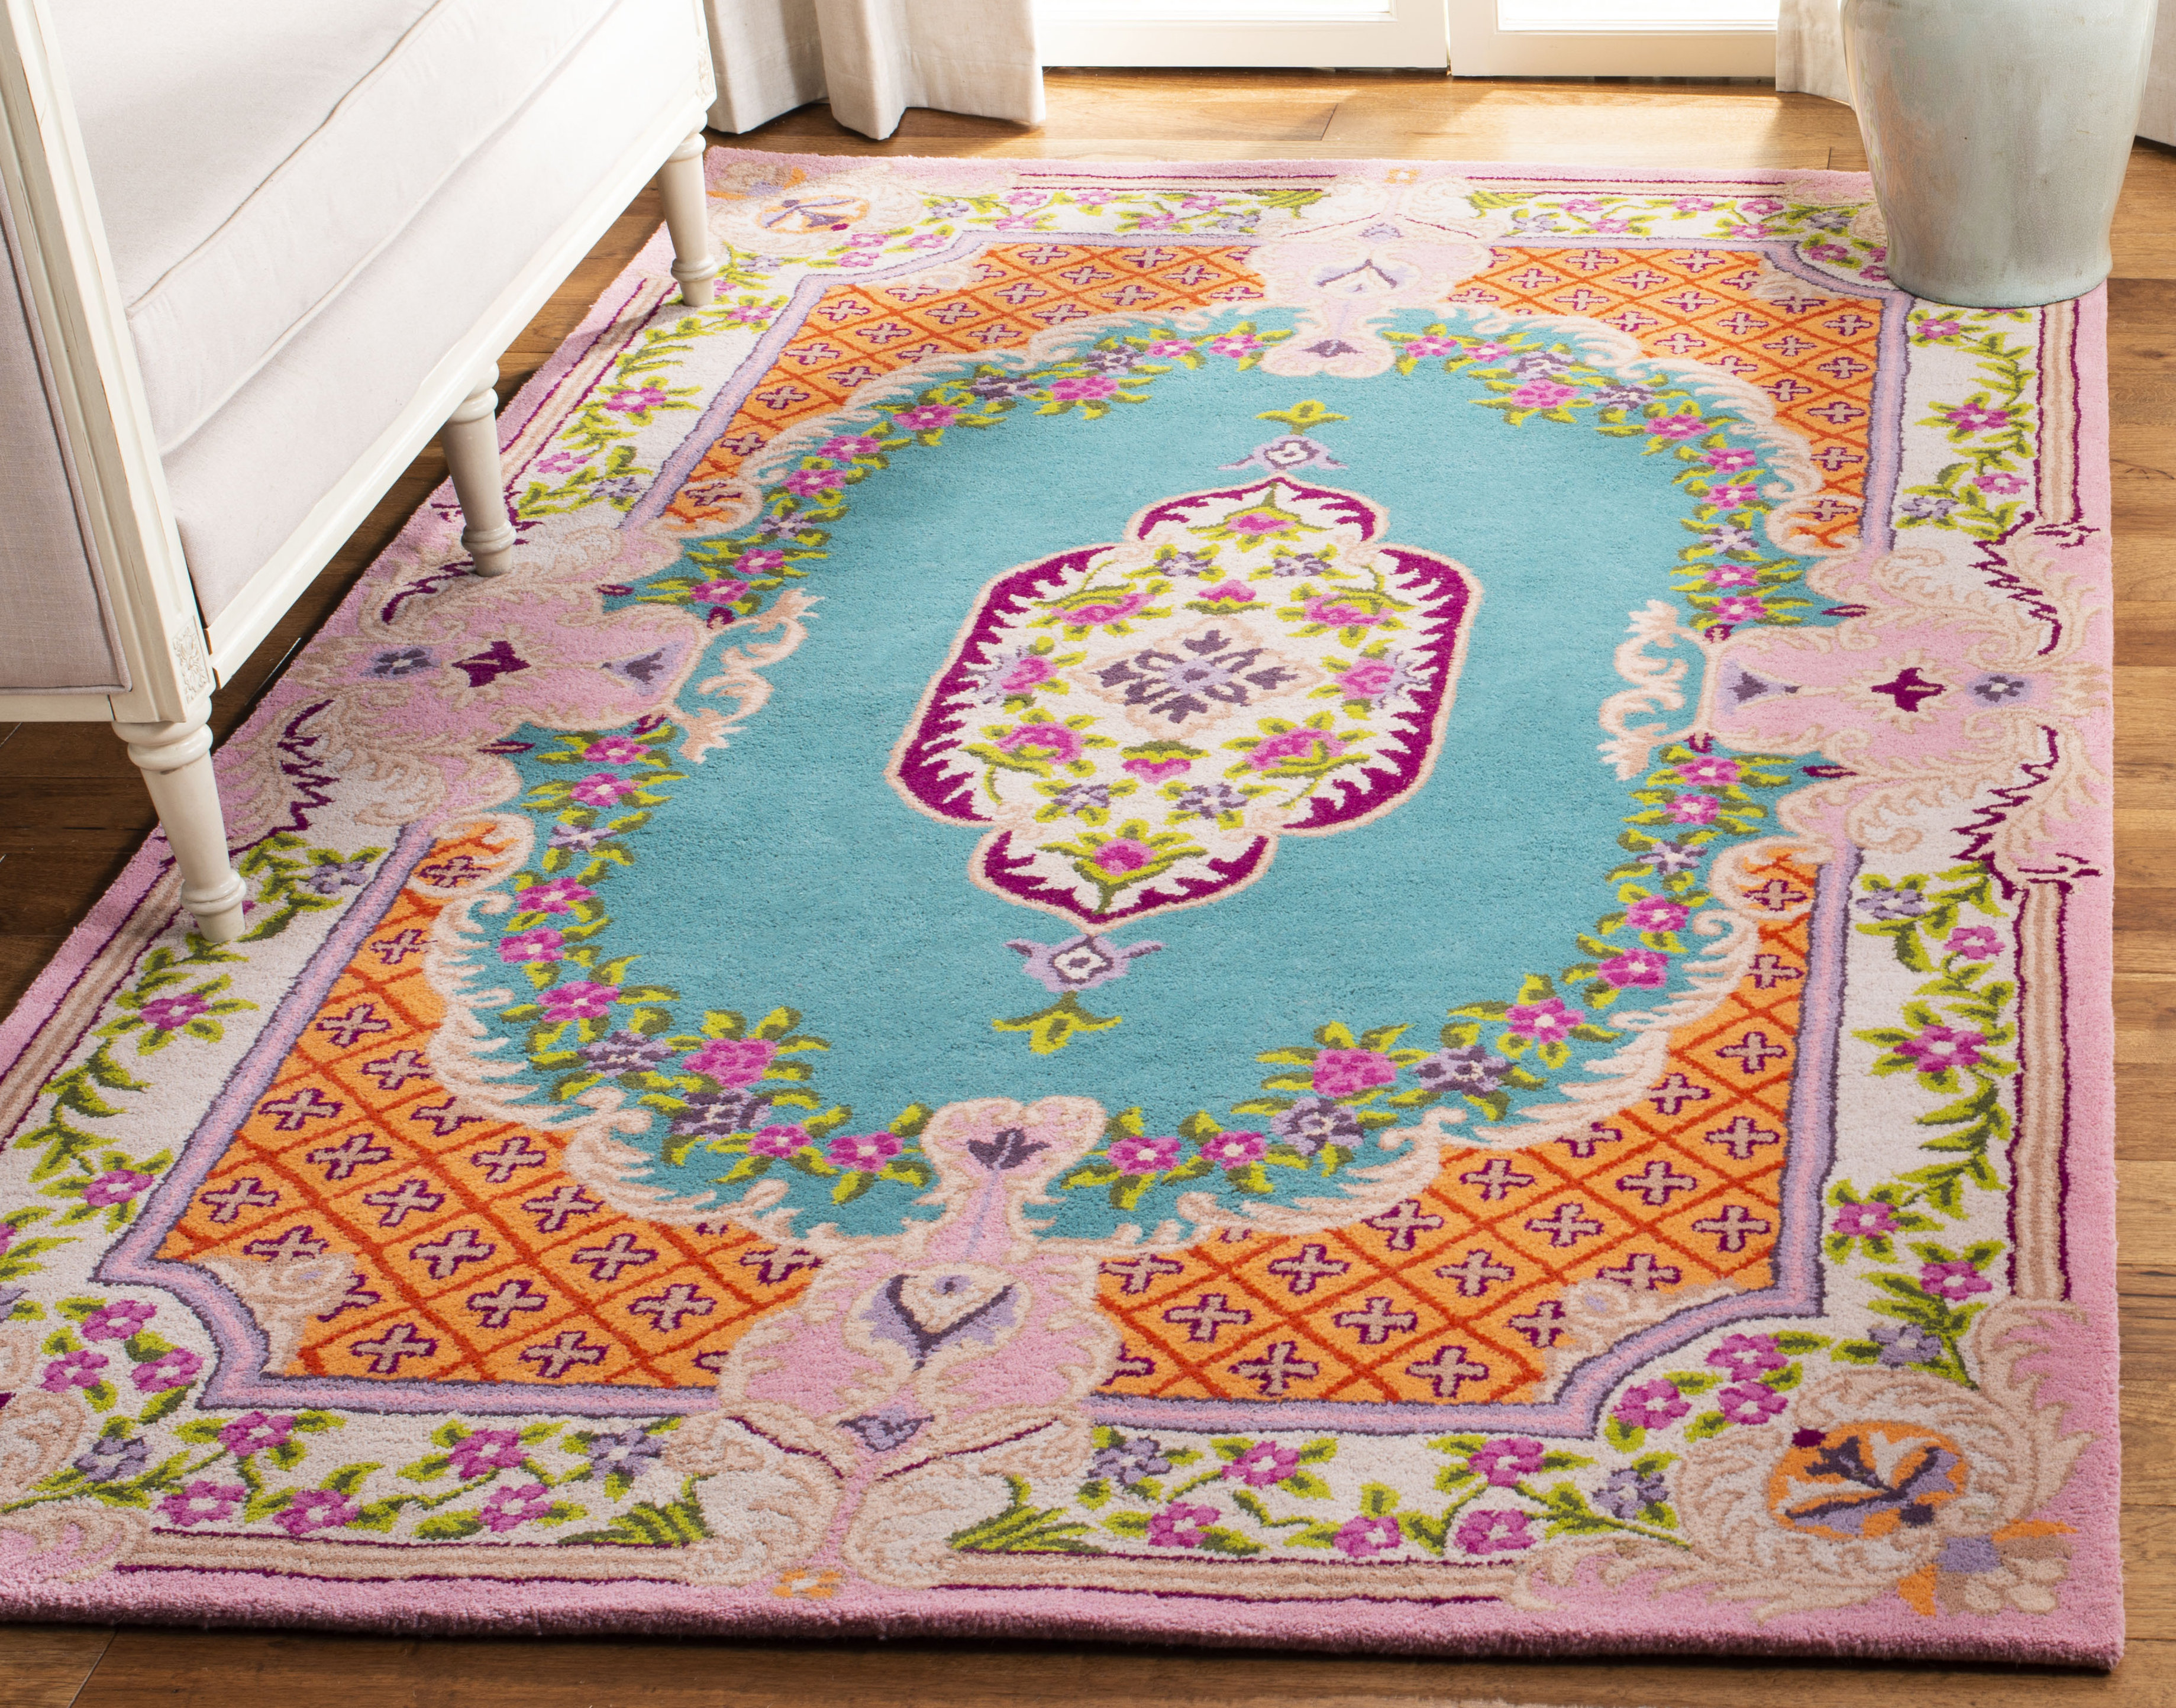 Handmade custom tufted puzzle area rug /jigsaw puzzle rug/handcrafted rug/  16 block of puzzle rug